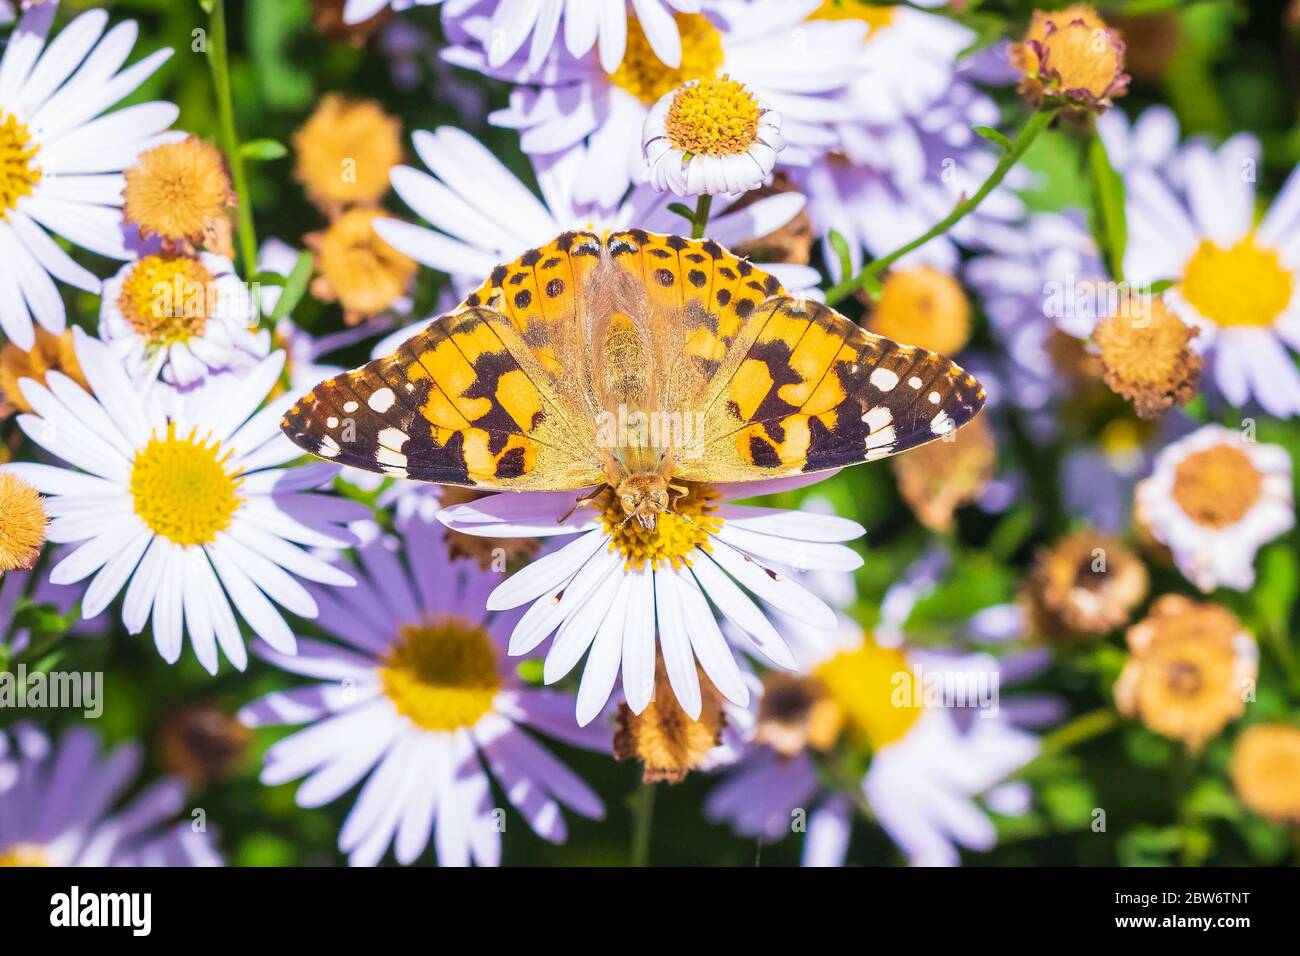 Distelfalter Schmetterling Vanessa cardui volle Spannweite Draufsicht Fütterung auf schöne weiße Blumen in einem Garten Stockfoto